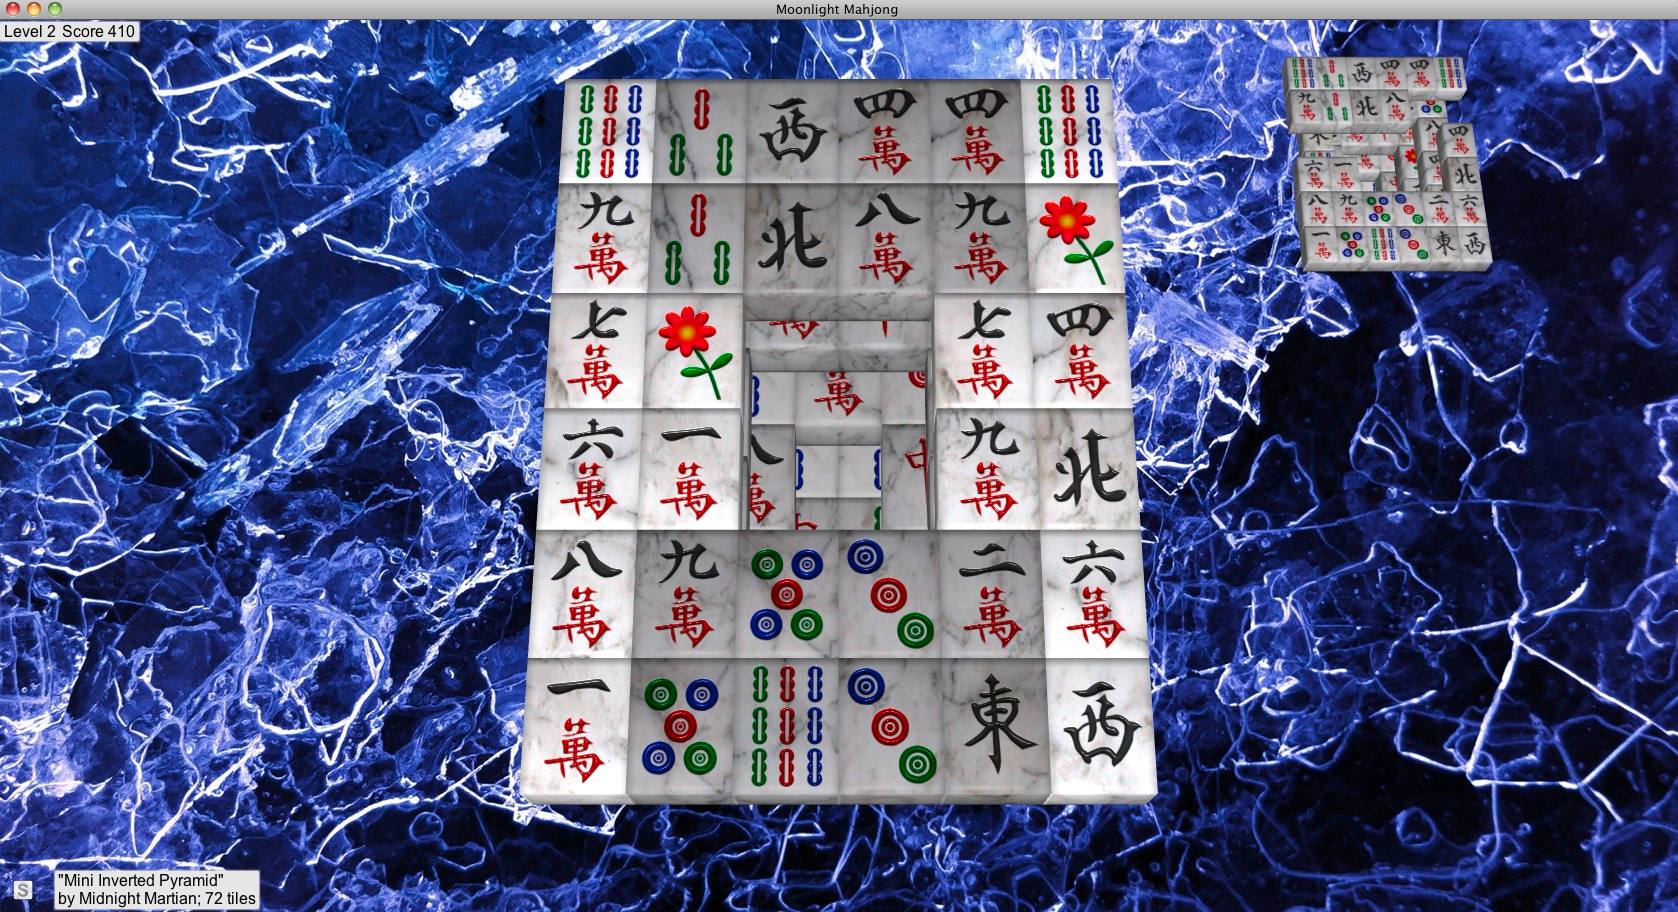 Moonlight Mahjong : Gameplay